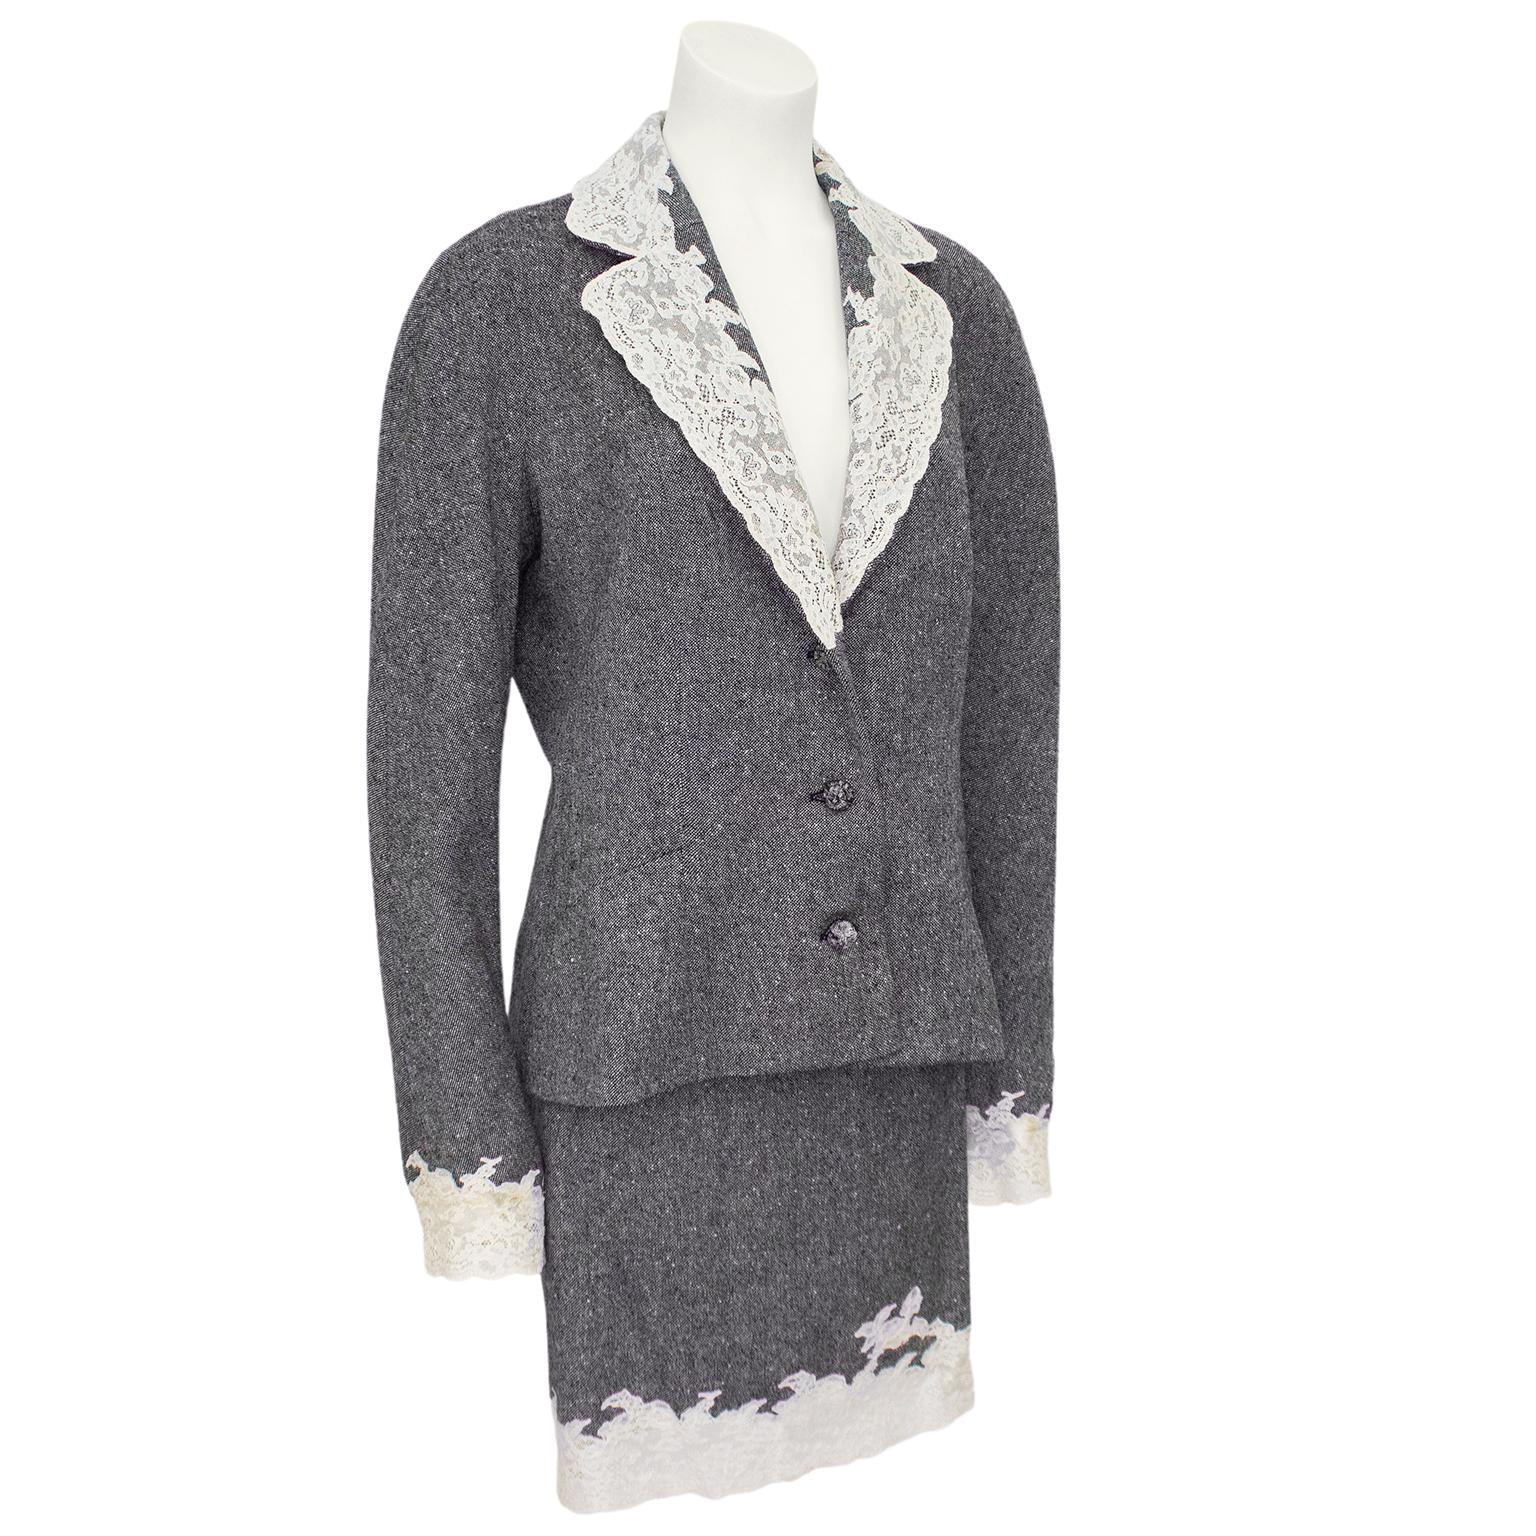 Costume Christian Dior de la collection automne/hiver 1998. Blazer en tweed de laine gris agrémenté de dentelle crème au col cranté et aux poignets. Épaules surdimensionnées et trois boutons passimentarie gris assortis. Doublure en soie crème avec